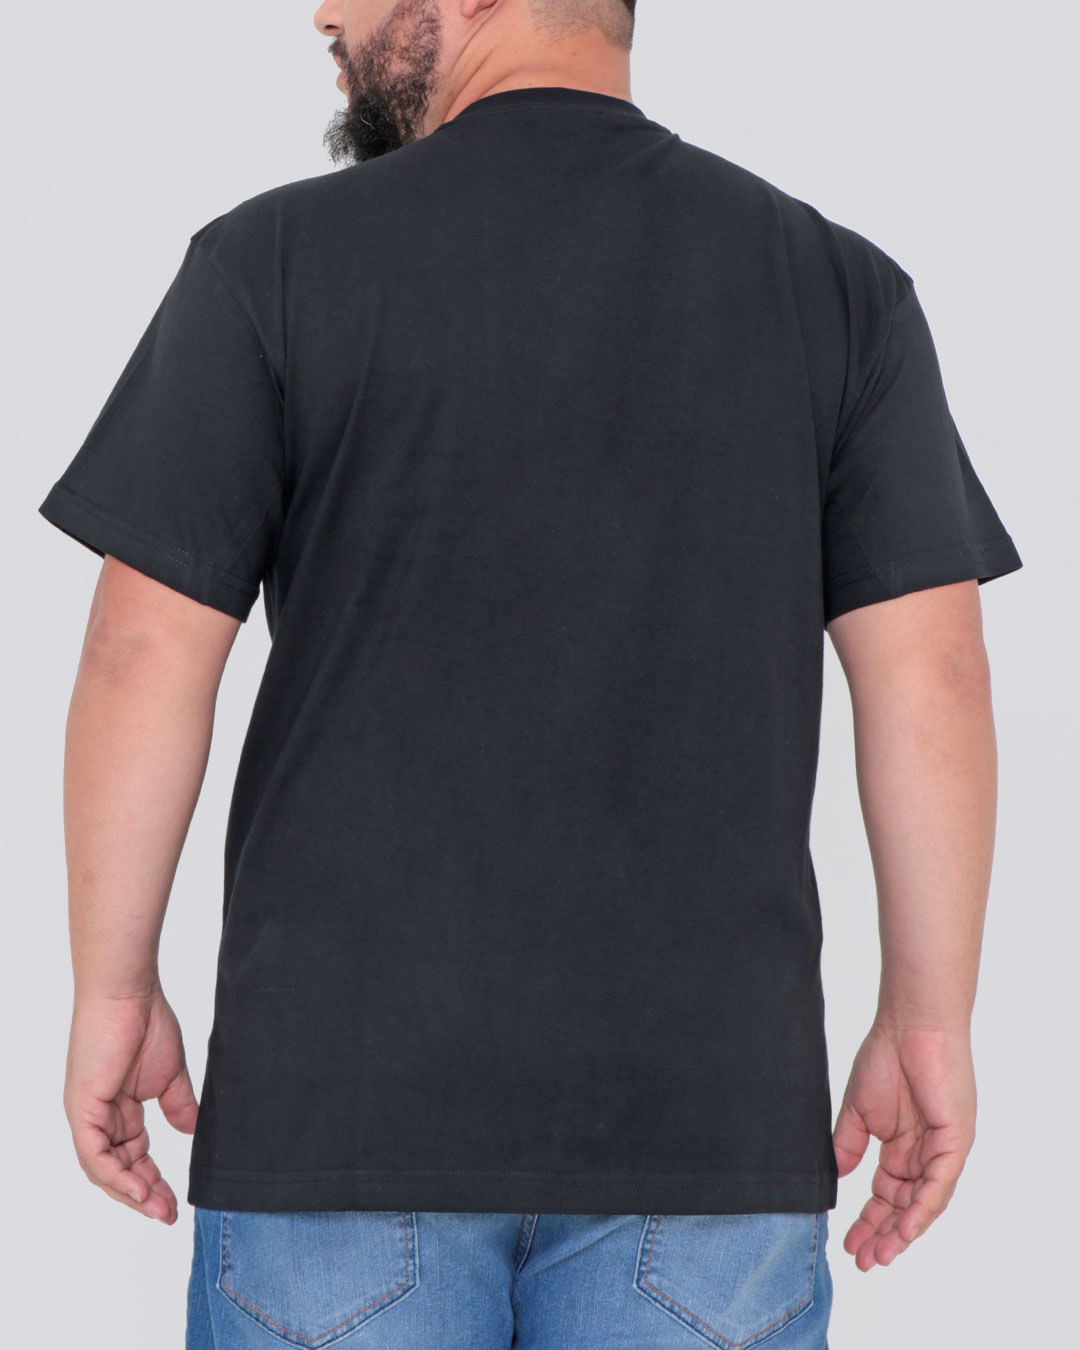 Camiseta-Plus-Size-Estampa-Ecko-Unlimited-Preta